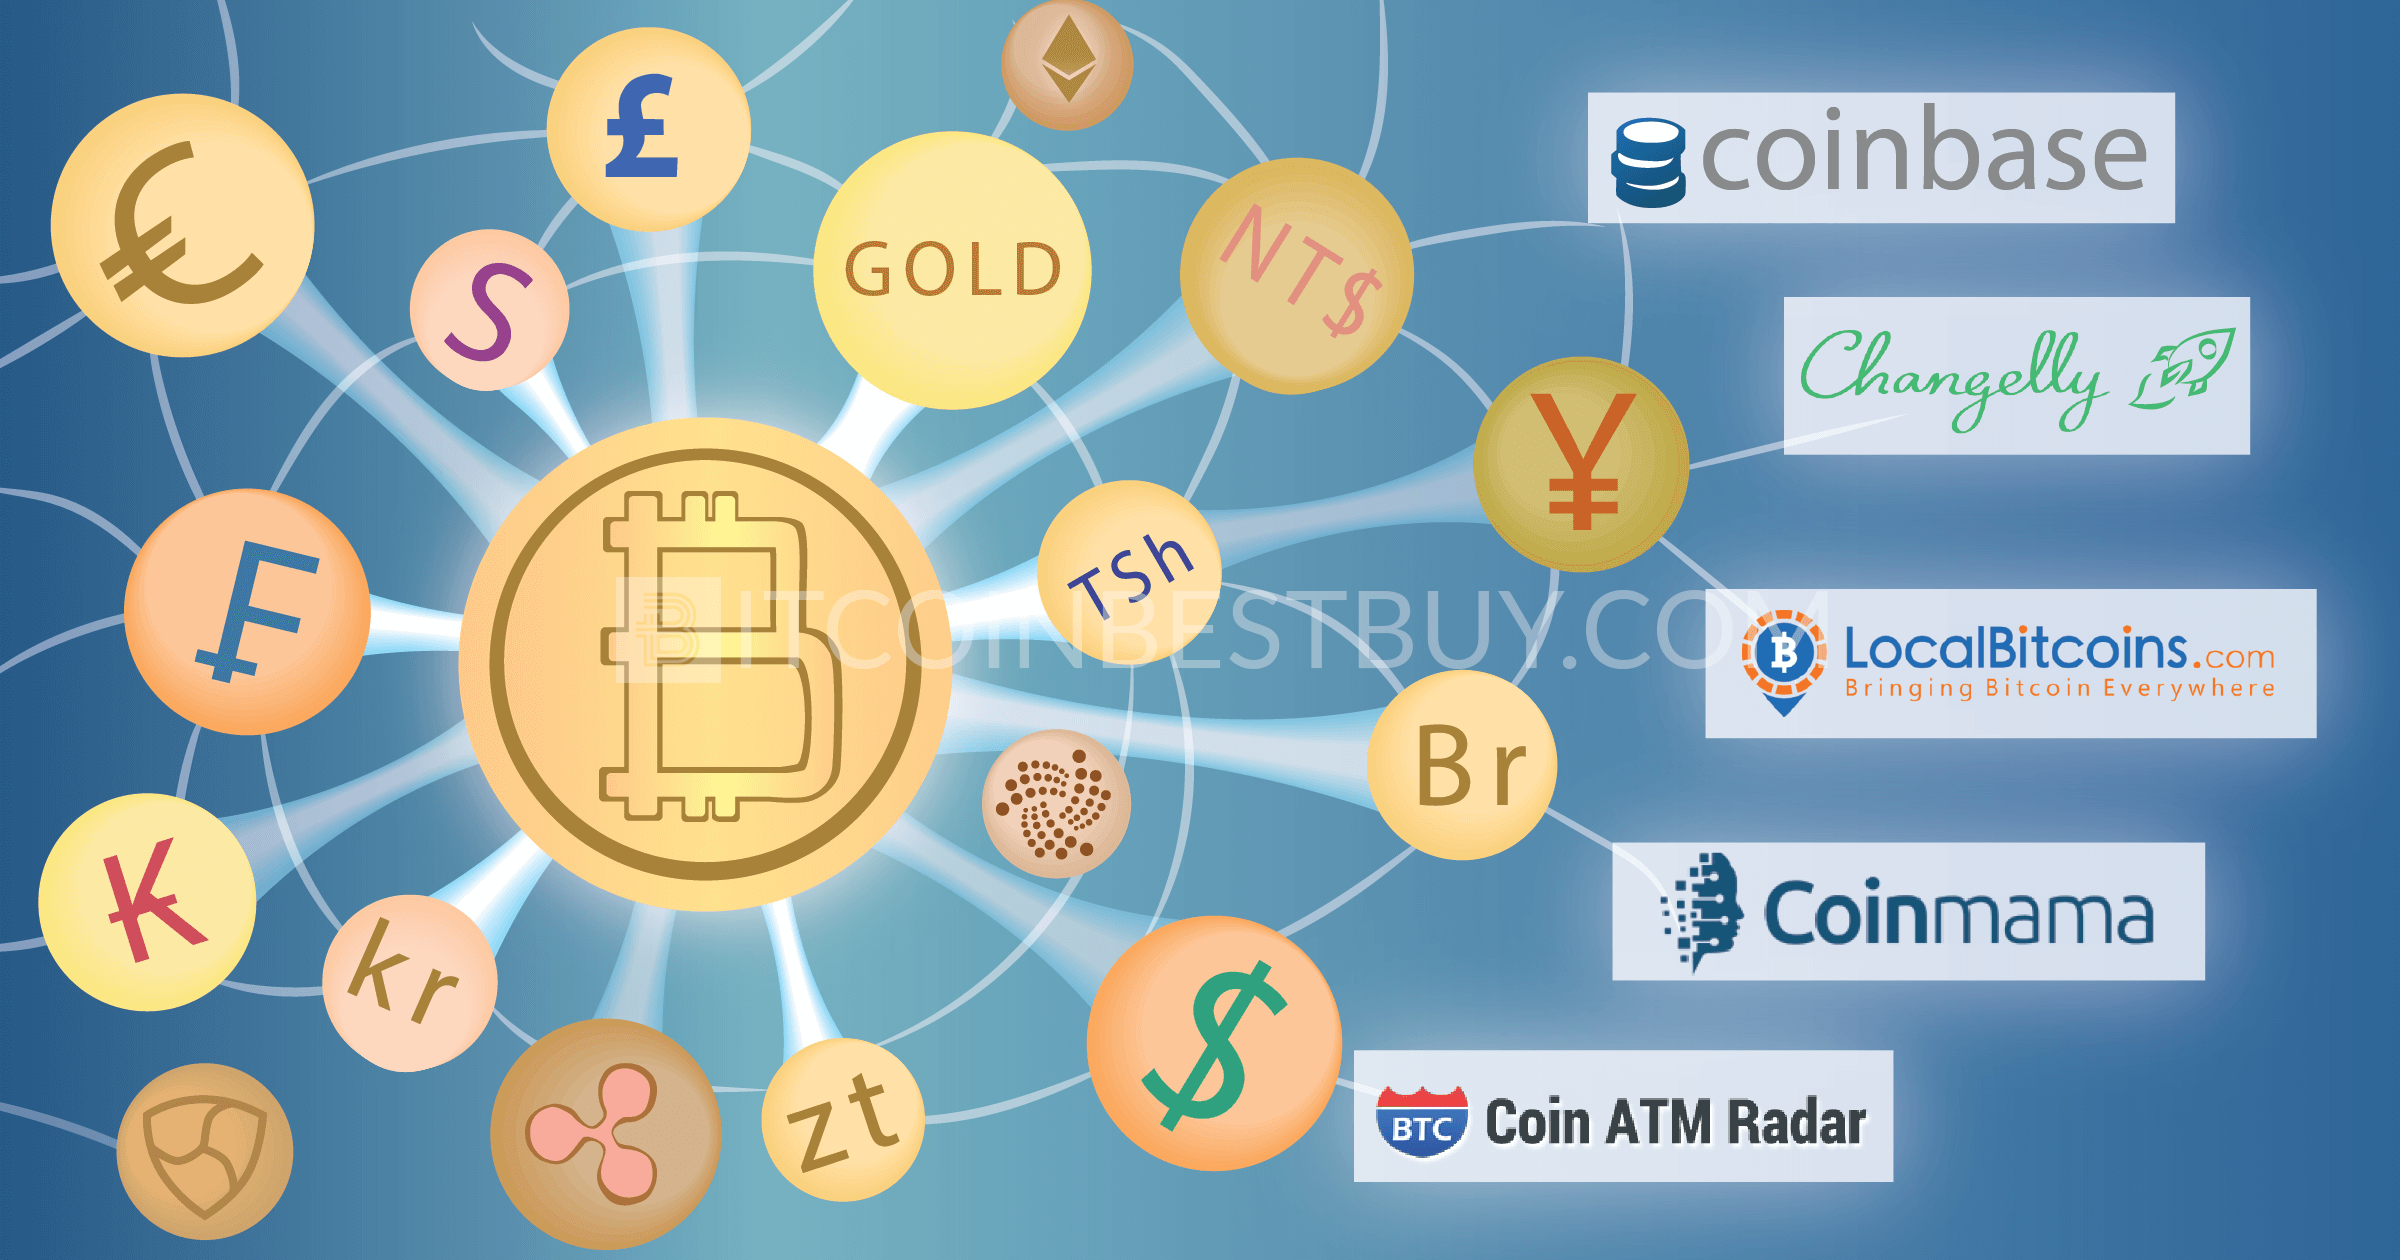 Bitcoin exchanges top кошелек криптовалют с возможностью обмена на валюту